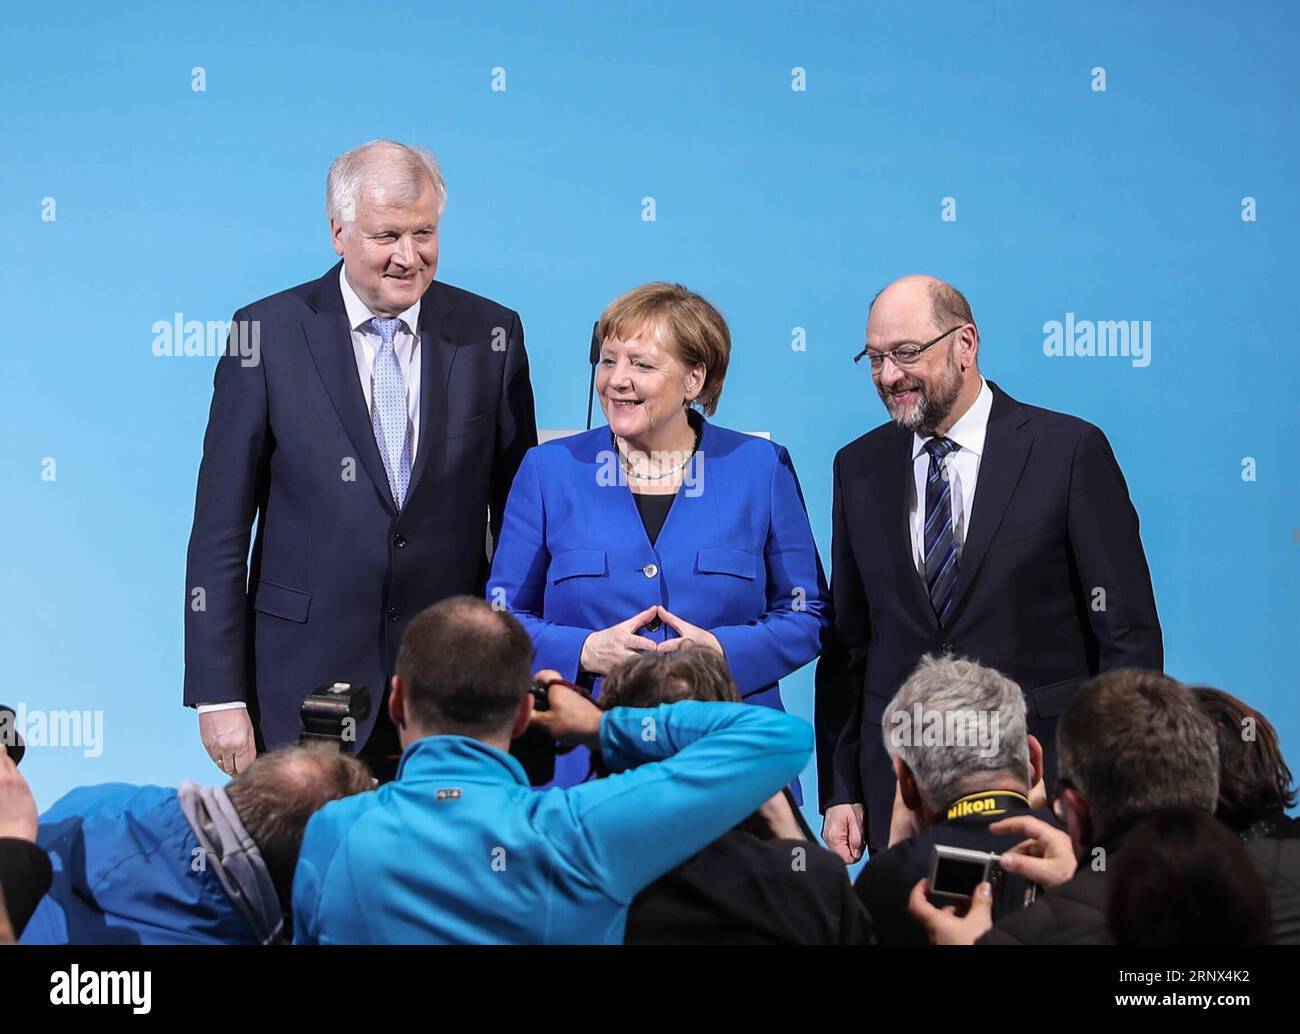 (180112) -- BERLIN, 12. Januar 2018 -- Bundeskanzlerin und Vorsitzende der Deutschen Christlich Demokratischen Union (CDU) Angela Merkel (C), der CSU-Vorsitzende Horst Seehofer (L) und der SPD-Vorsitzende Martin Schulz posieren nach einer gemeinsamen Pressekonferenz am 12. Januar 2018 im SPD-Hauptquartier in Berlin für Fotos. Die Konservativen und Sozialdemokraten (SPD) der deutschen Bundeskanzlerin Angela Merkel haben am Freitag in ihren Sondierungsgesprächen zur Bildung einer neuen Koalitionsregierung einen Durchbruch erzielt, berichteten lokale Medien. )(srb) DEUTSCHLAND-BERLIN- Stockfoto